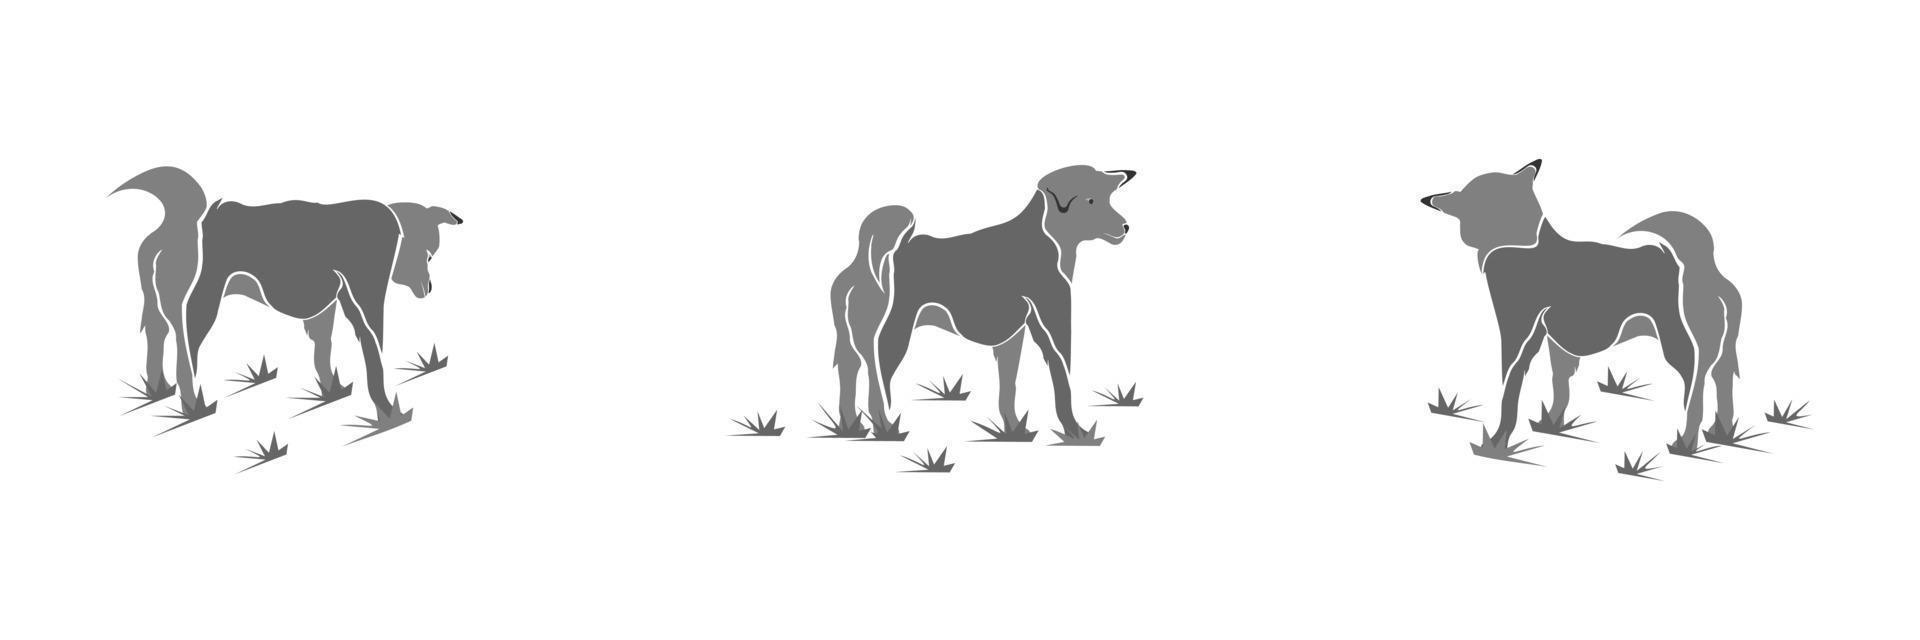 perro de dibujos animados ilustración vectorial aislado vector